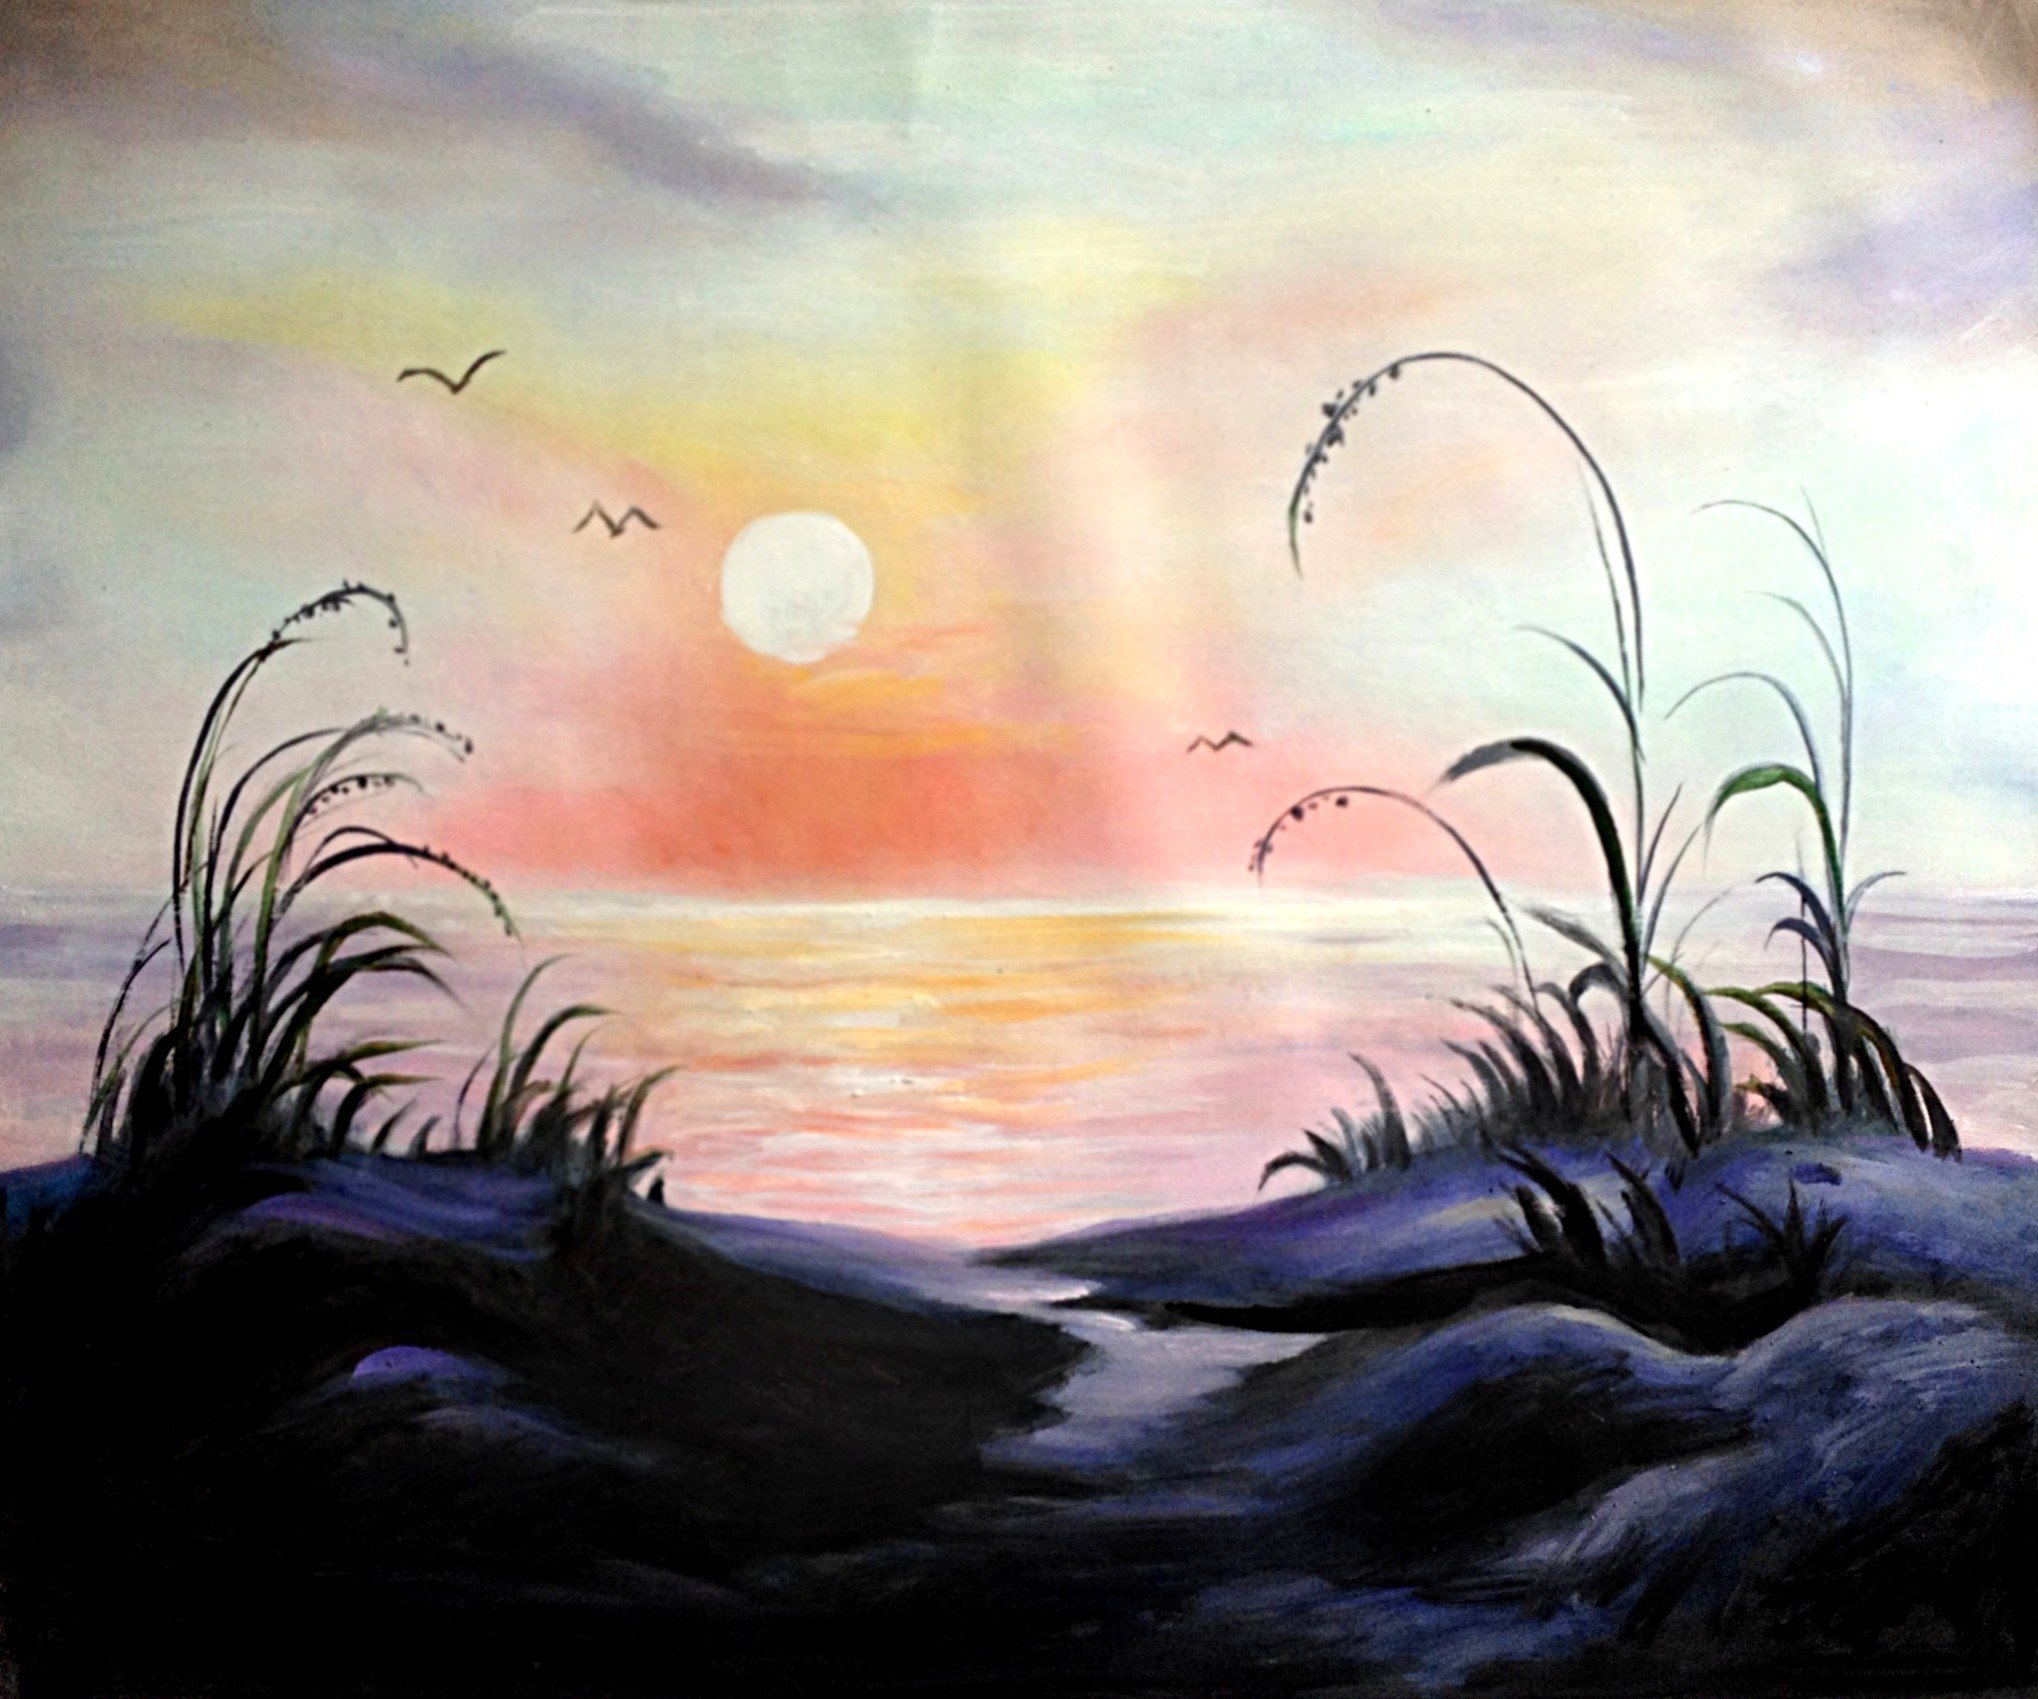 Пейзаж с передачей утреннего или вечернего настроения. Боб Росс картины море. Пейзаж рисунок. Пейзаж легкий. Красивый пейзаж рисунок.